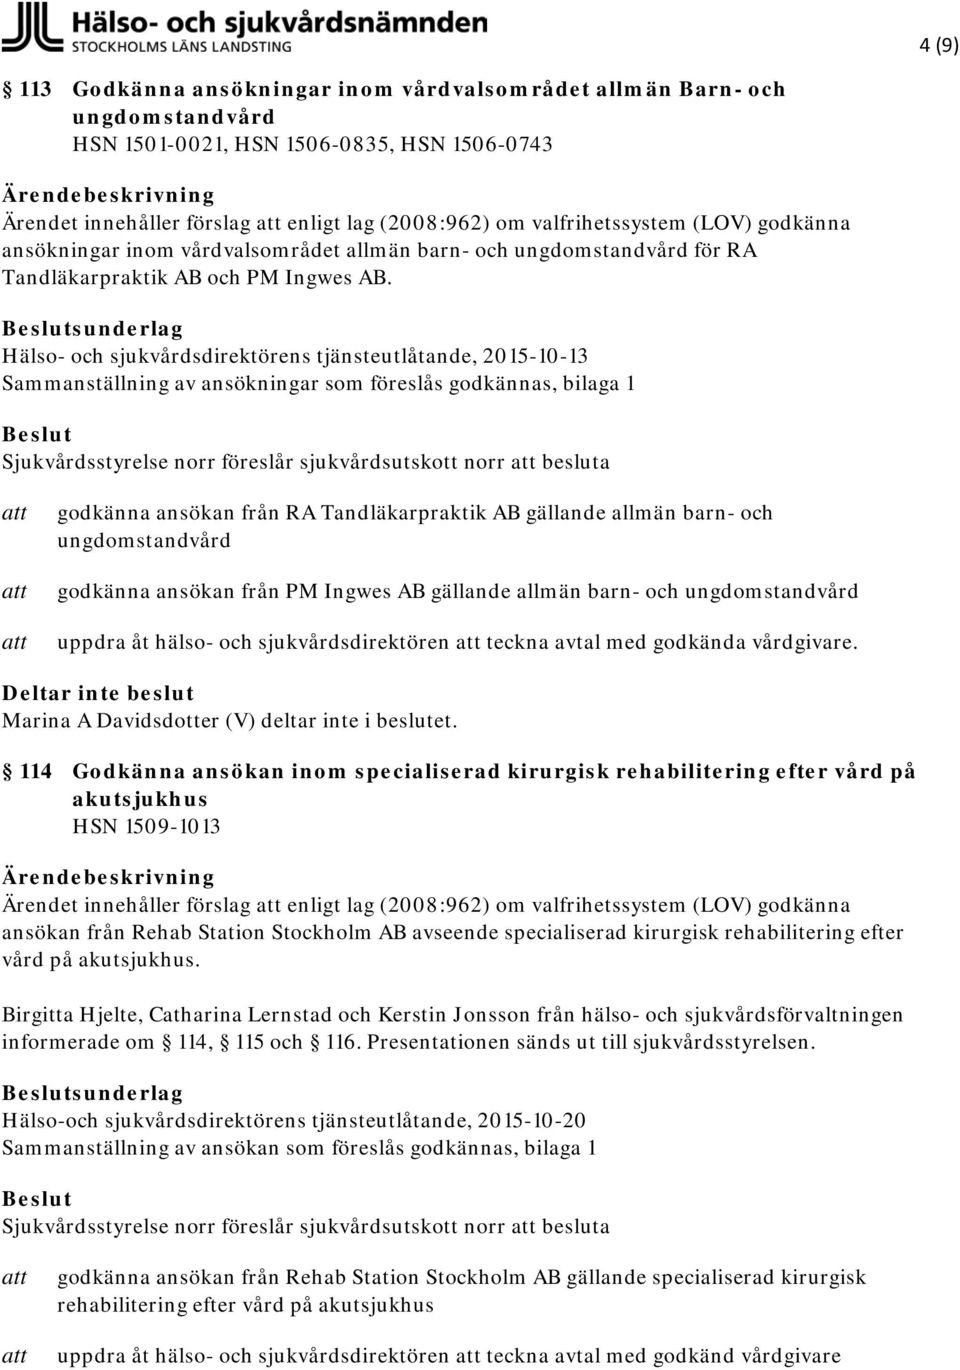 Hälso- och sjukvårdsdirektörens tjänsteutlåtande, 2015-10-13 Sammanställning av ansökningar som föreslås godkännas, bilaga 1 Sjukvårdsstyrelse norr föreslår sjukvårdsutskott norr besluta godkänna